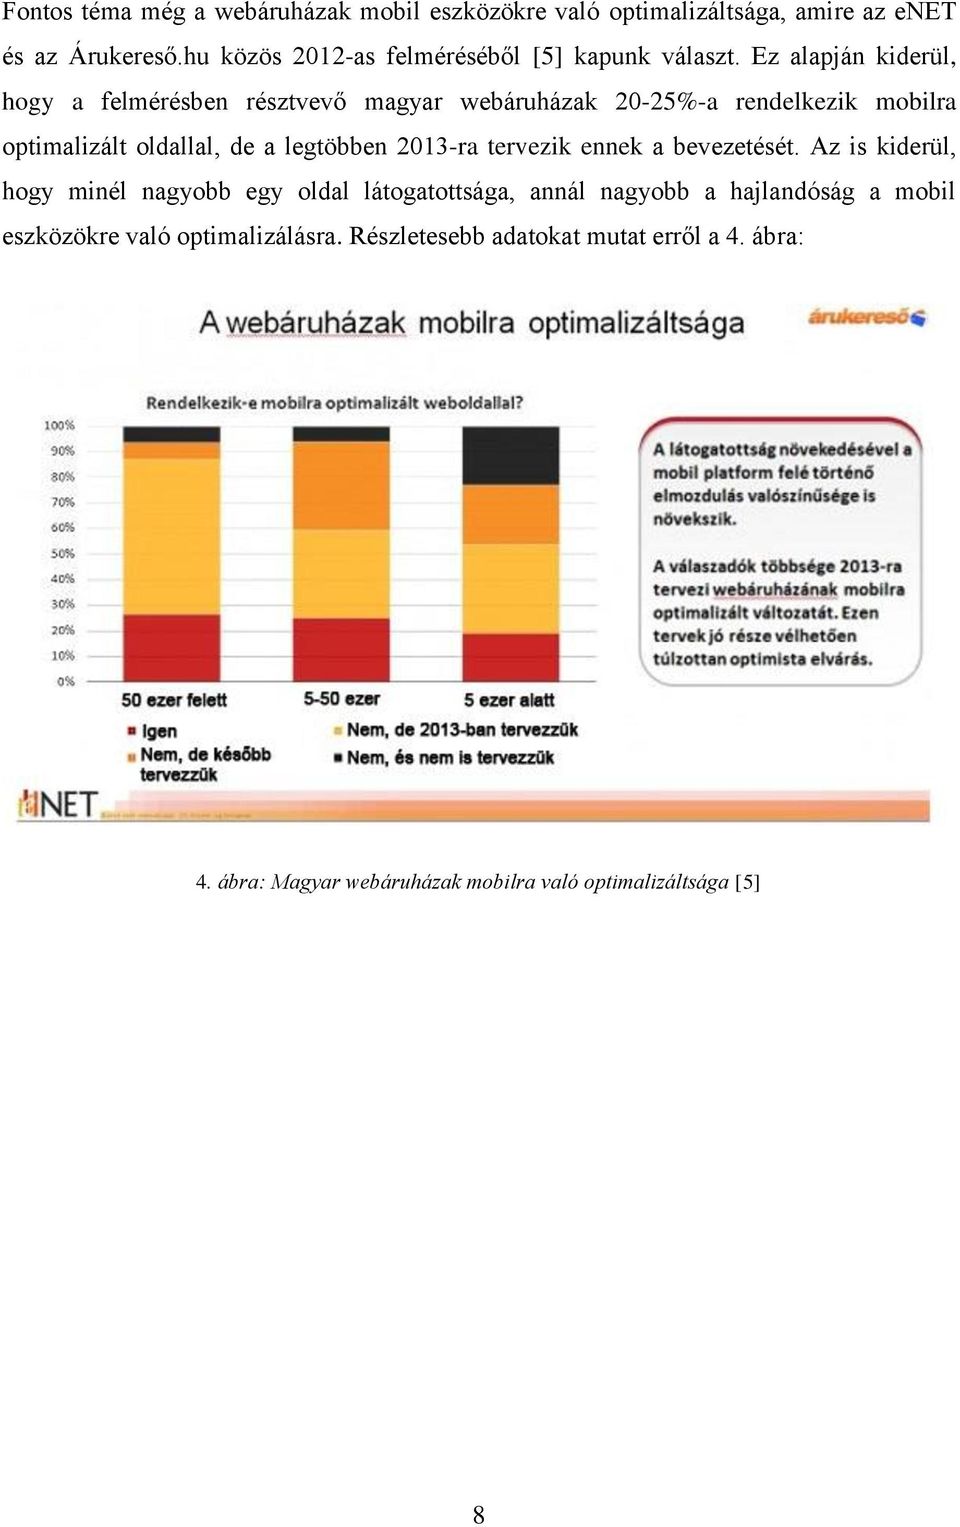 Ez alapján kiderül, hogy a felmérésben résztvevő magyar webáruházak 20-25%-a rendelkezik mobilra optimalizált oldallal, de a legtöbben